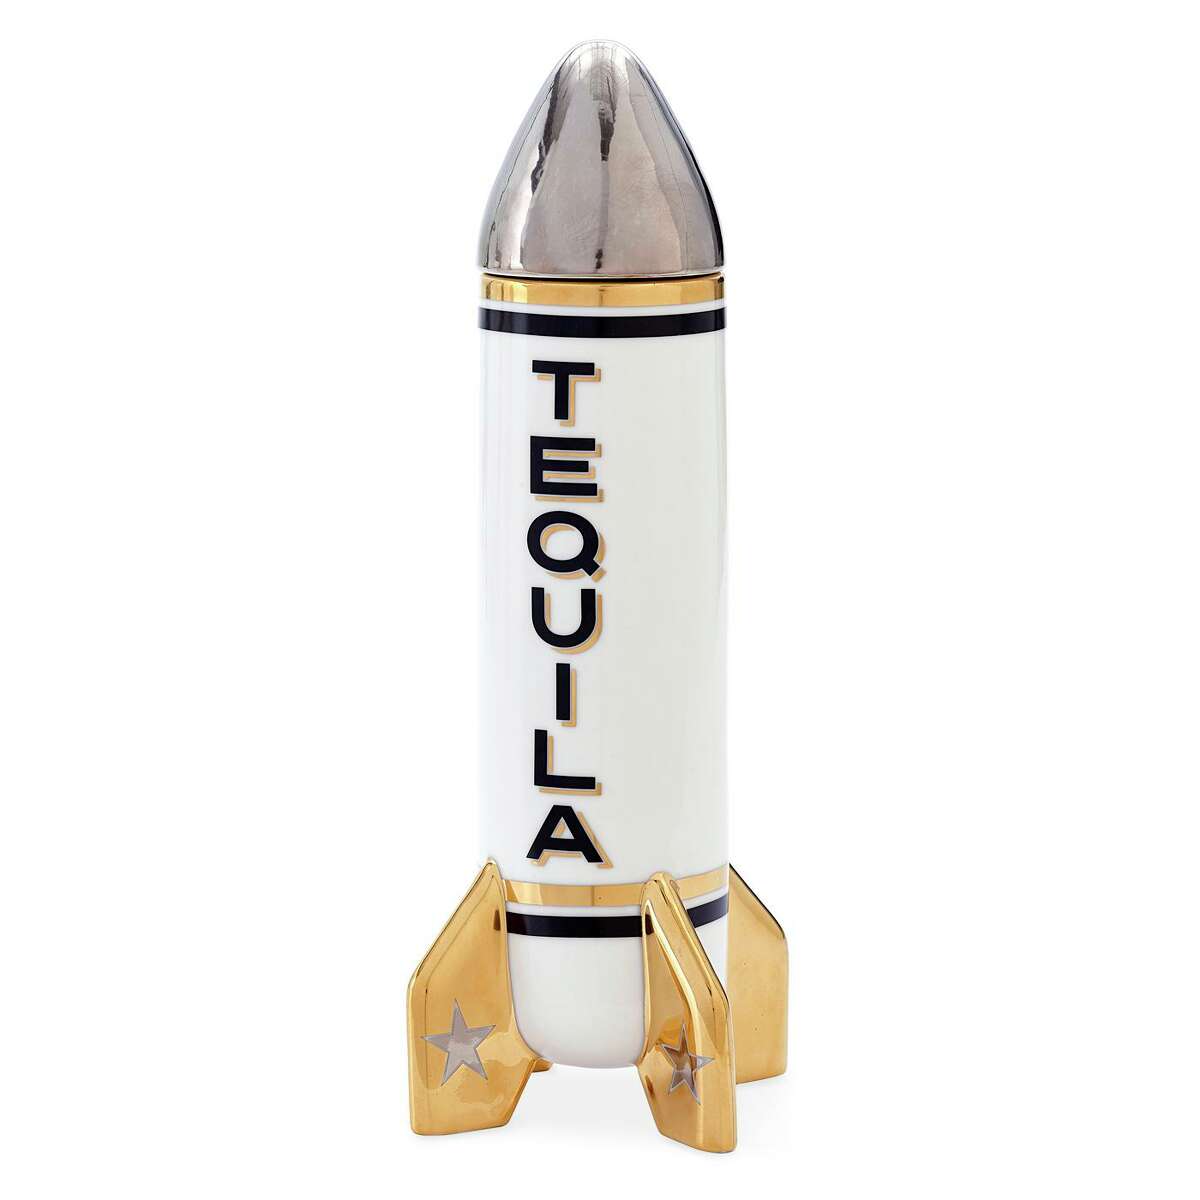 Jonathan Adler Rocket decanter, $148-198; jonathanadler.com